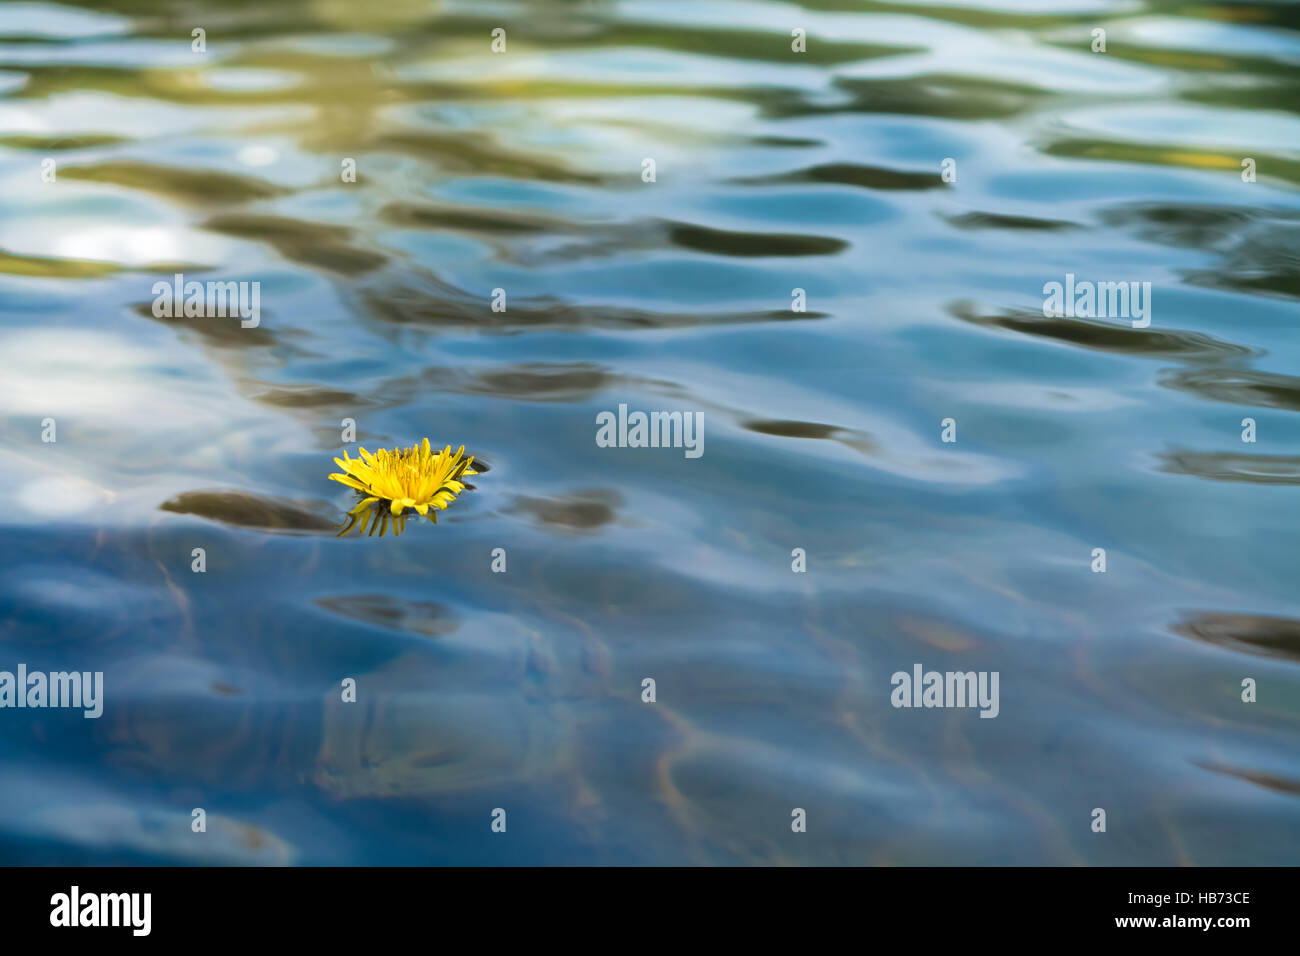 Dandelion flower in water Stock Photo